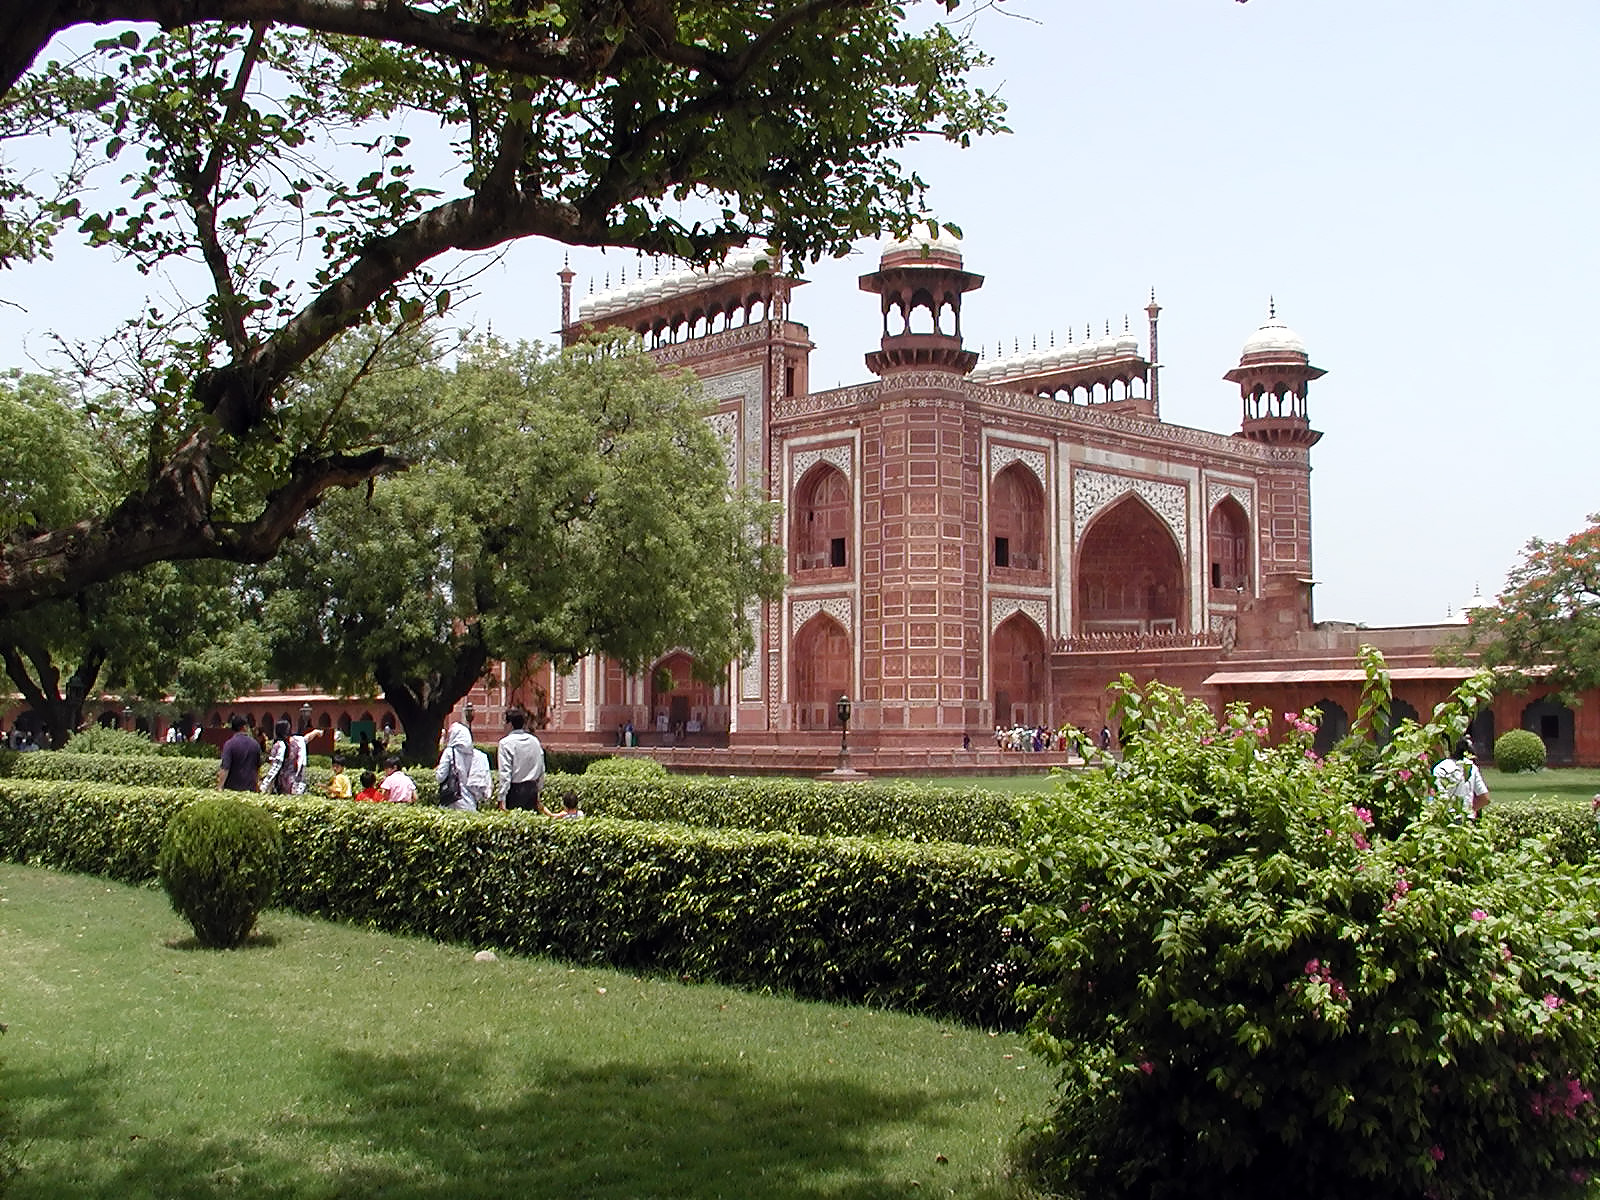 10-Jun-2001 11:55 - Agra - The Taj Mahal - The main gateway